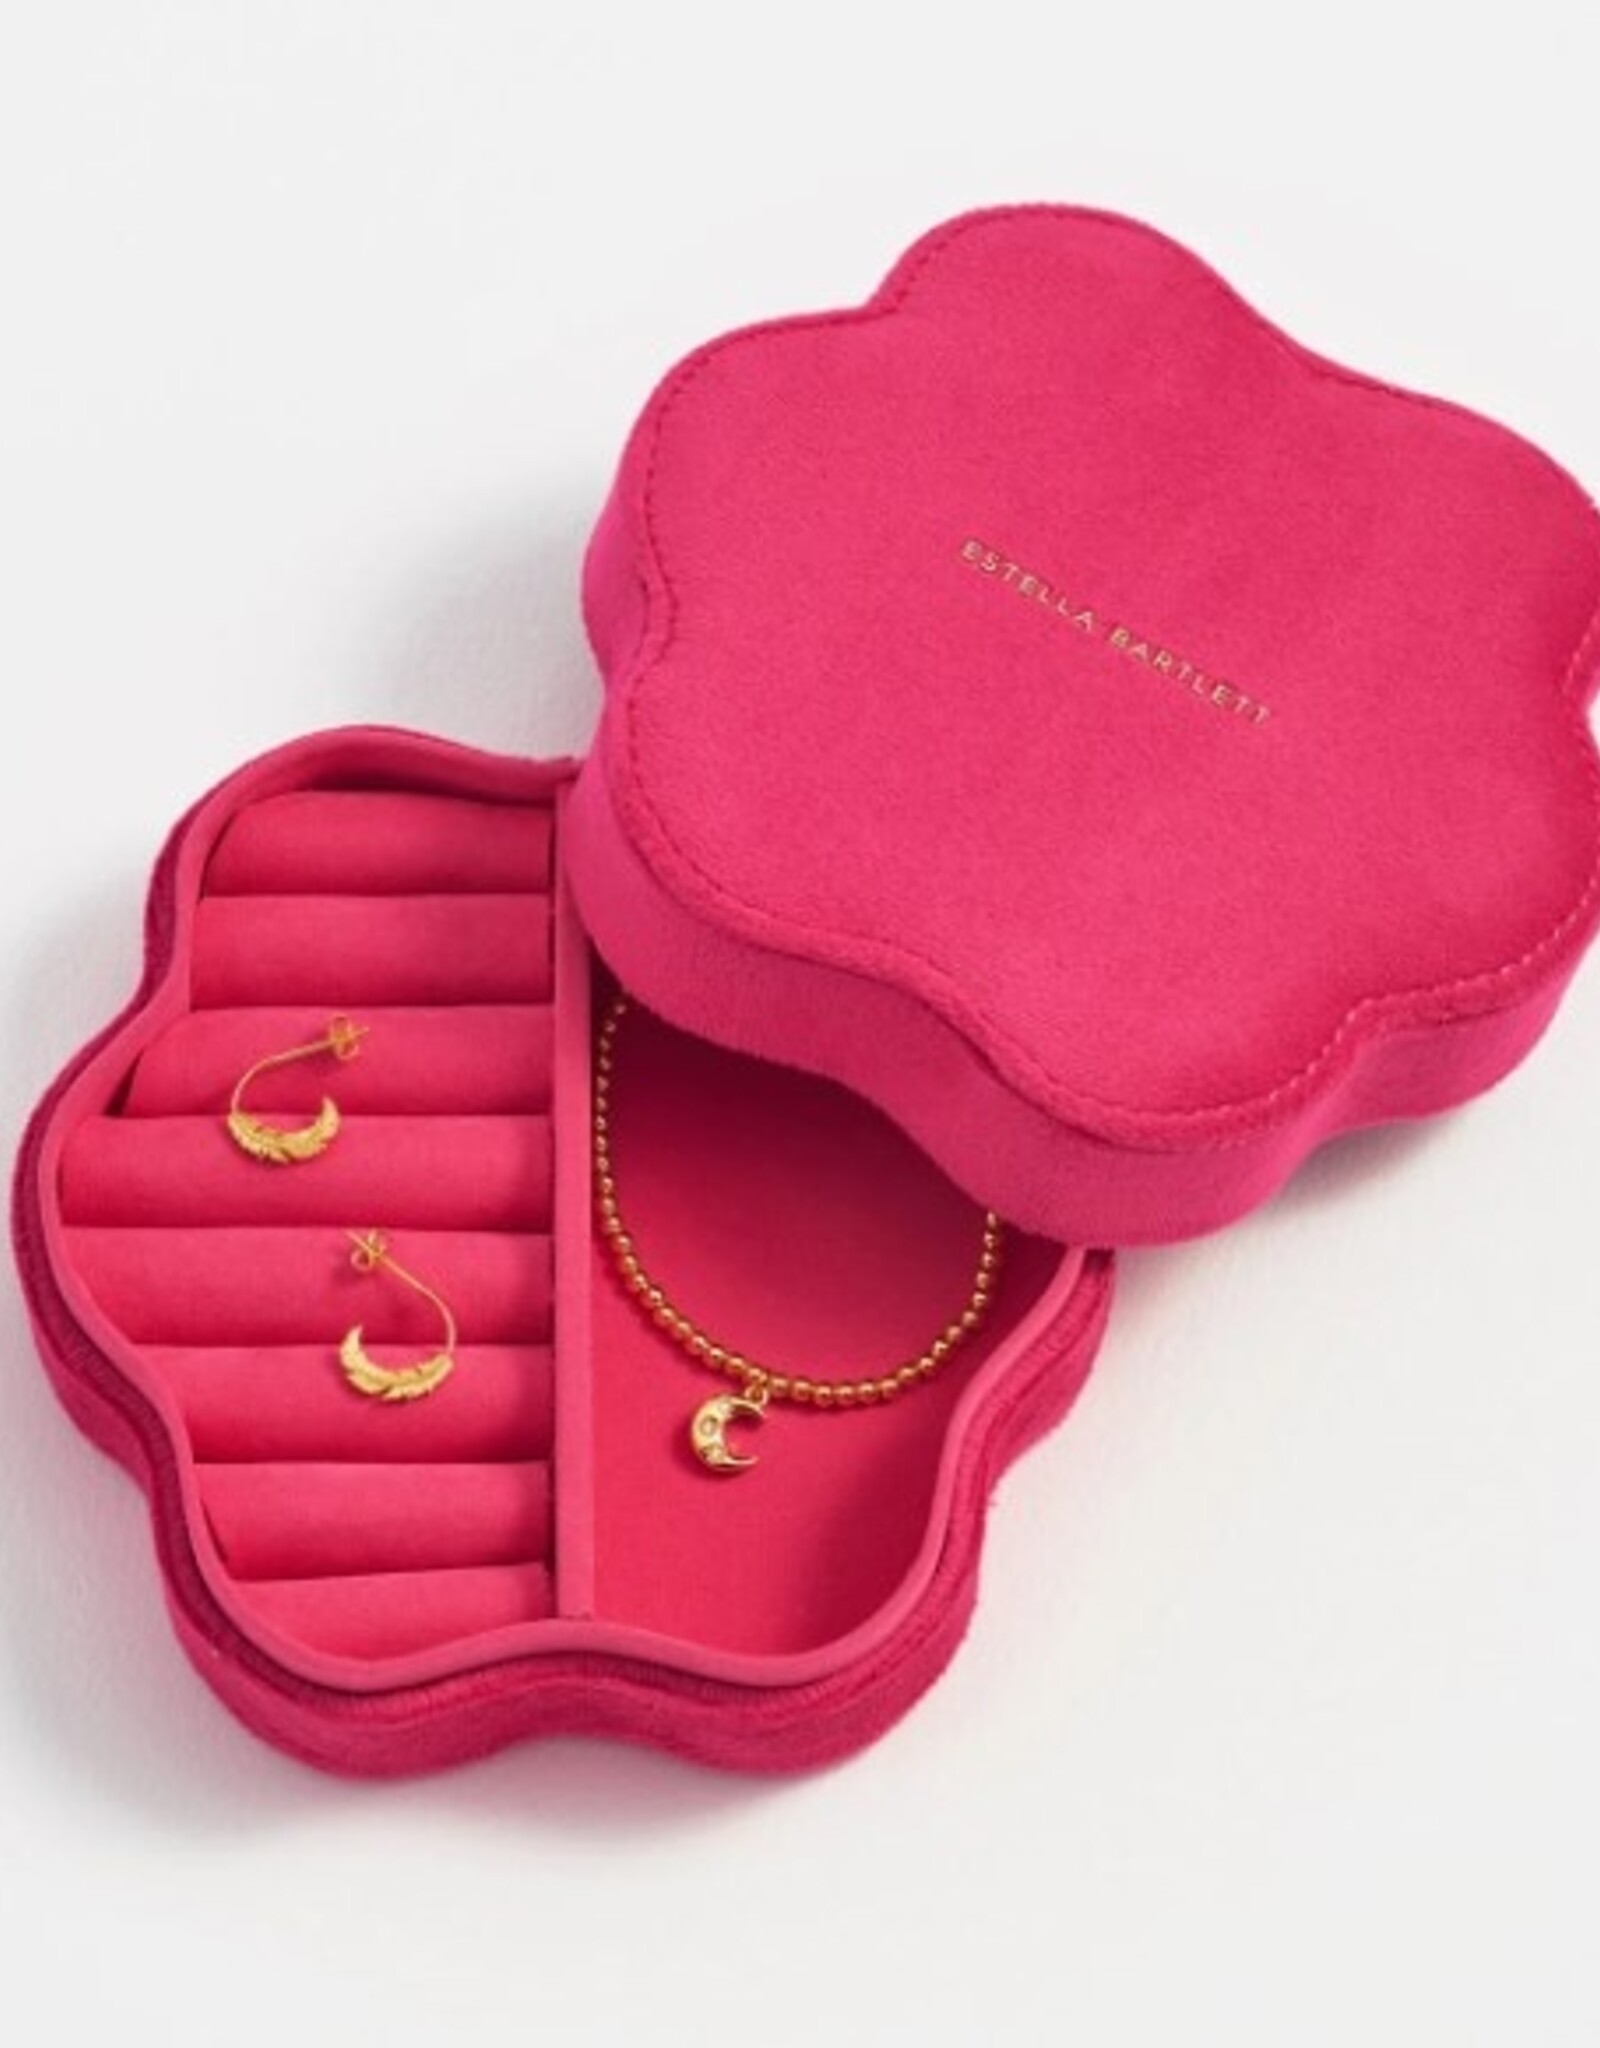 Estella Bartlett Wavy Box - Hot Pink Velvet